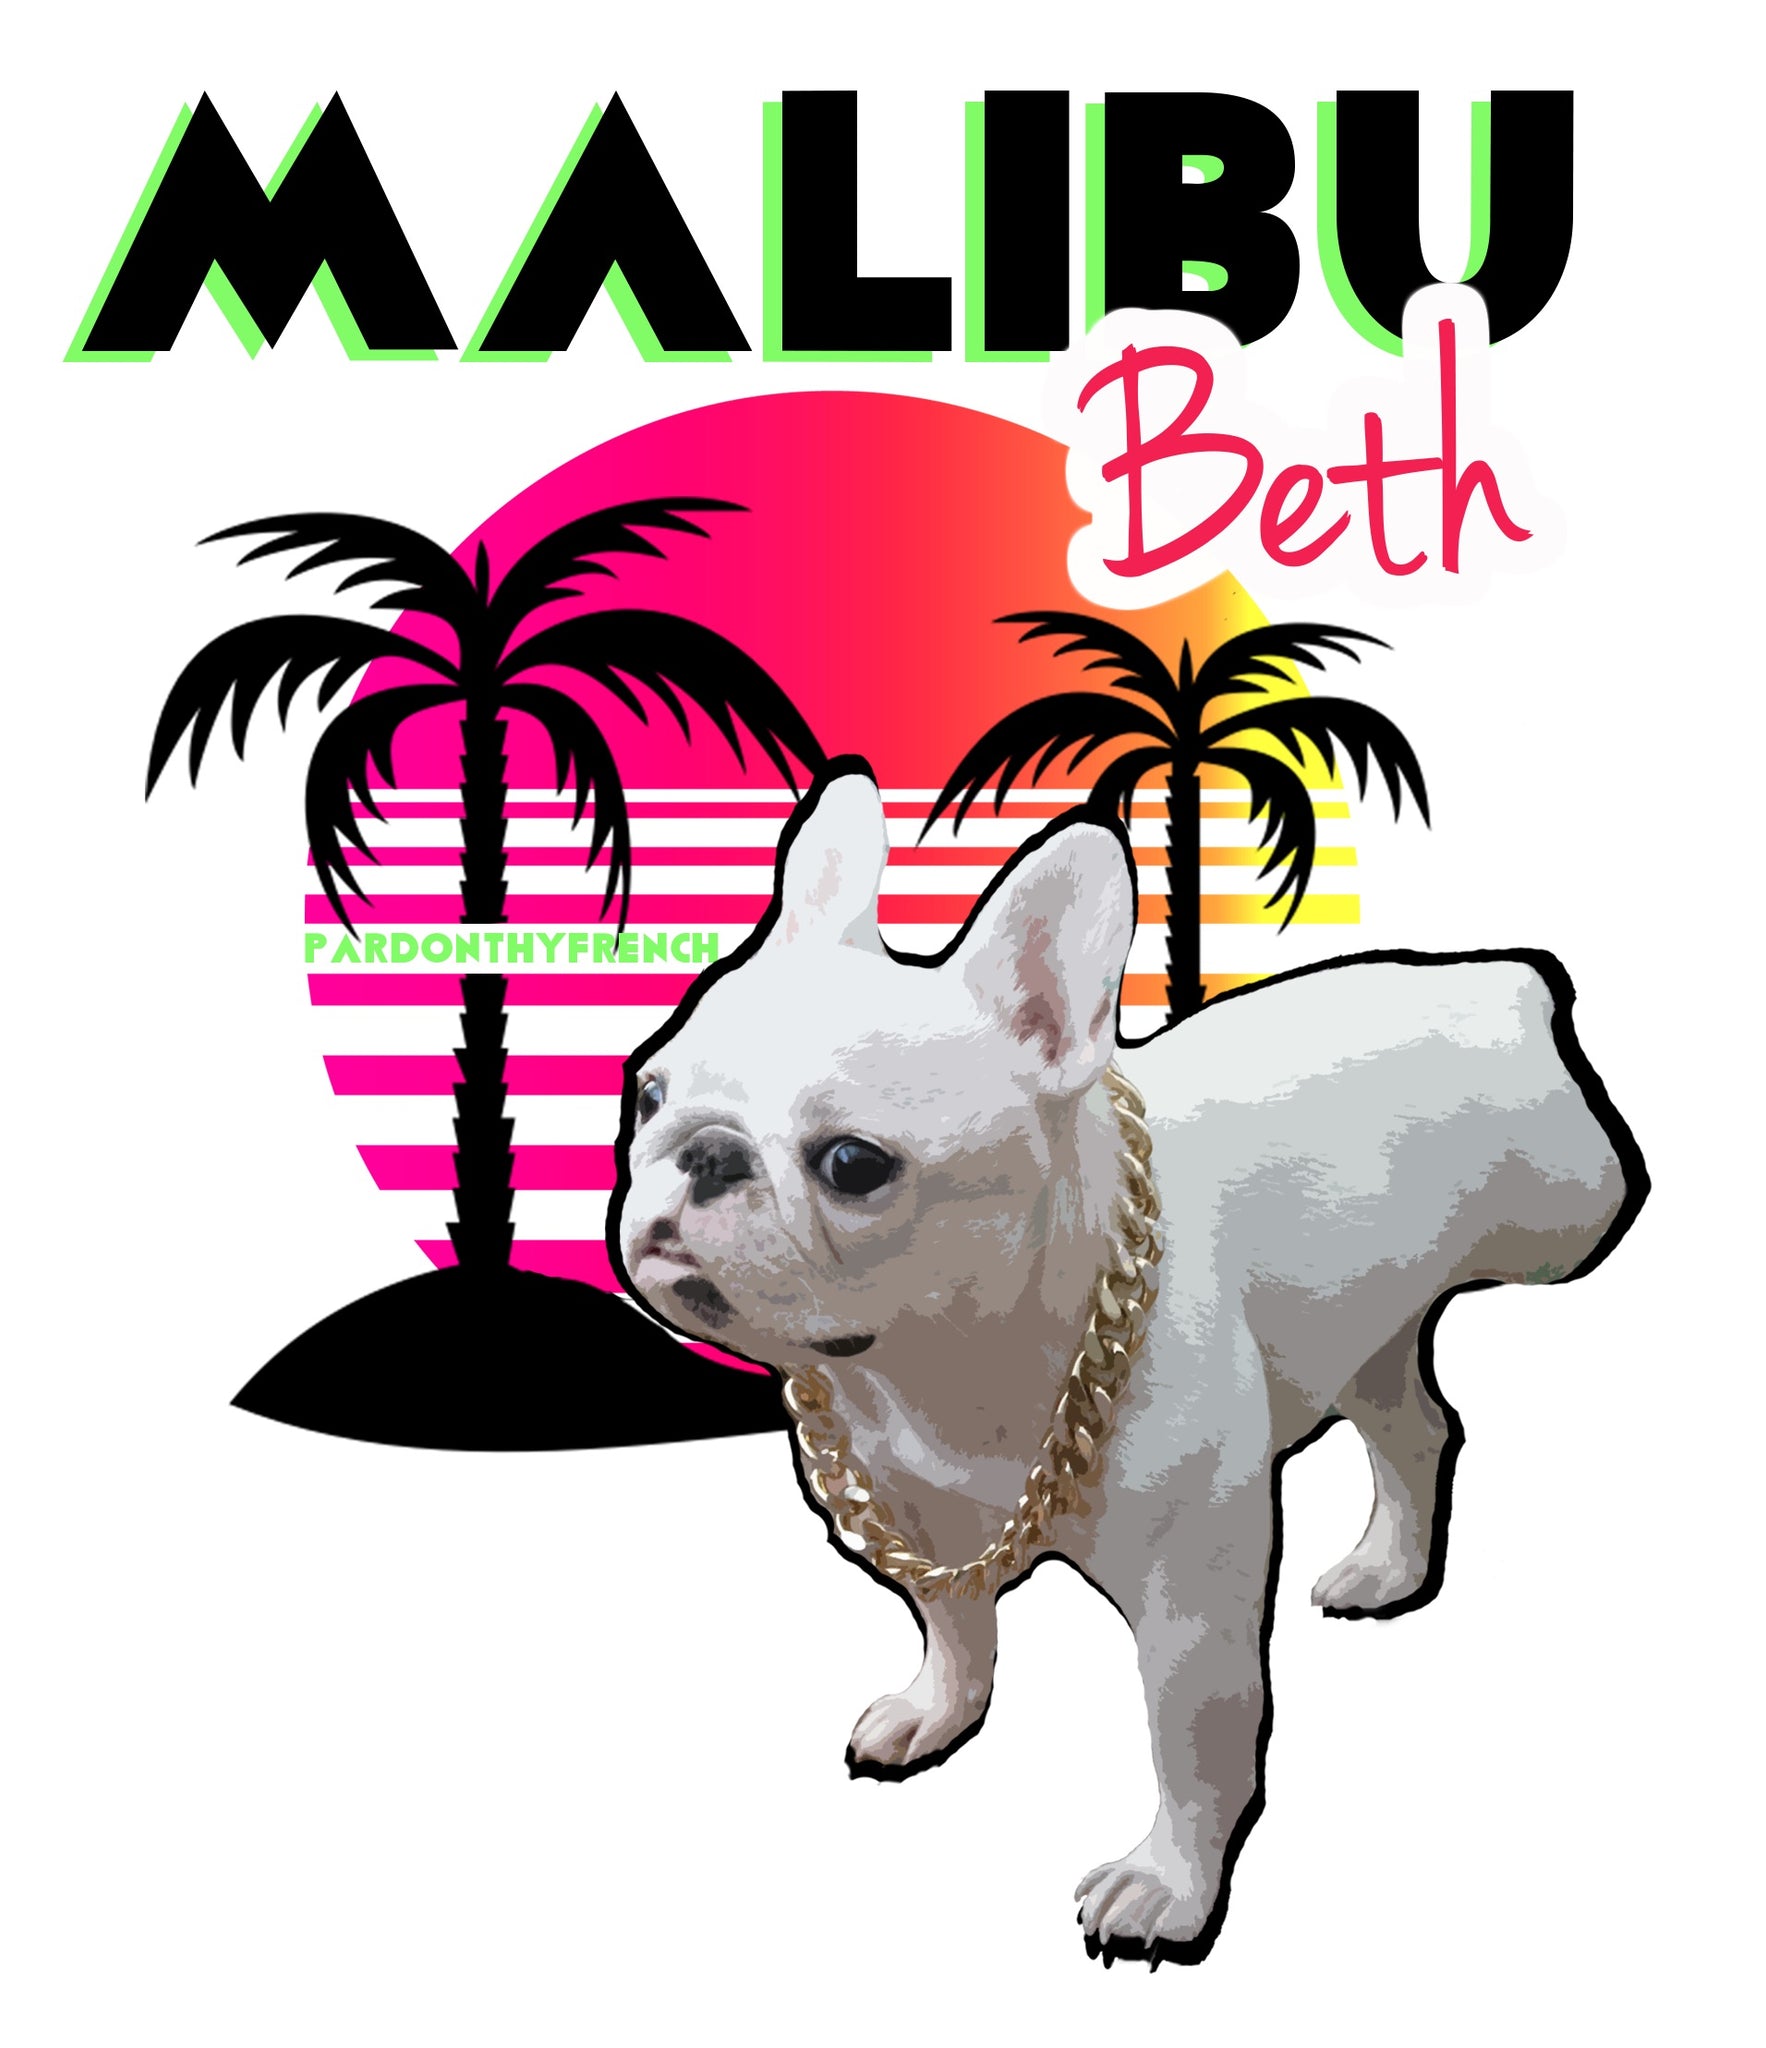 Pardon Thy French Goes to Malibu!